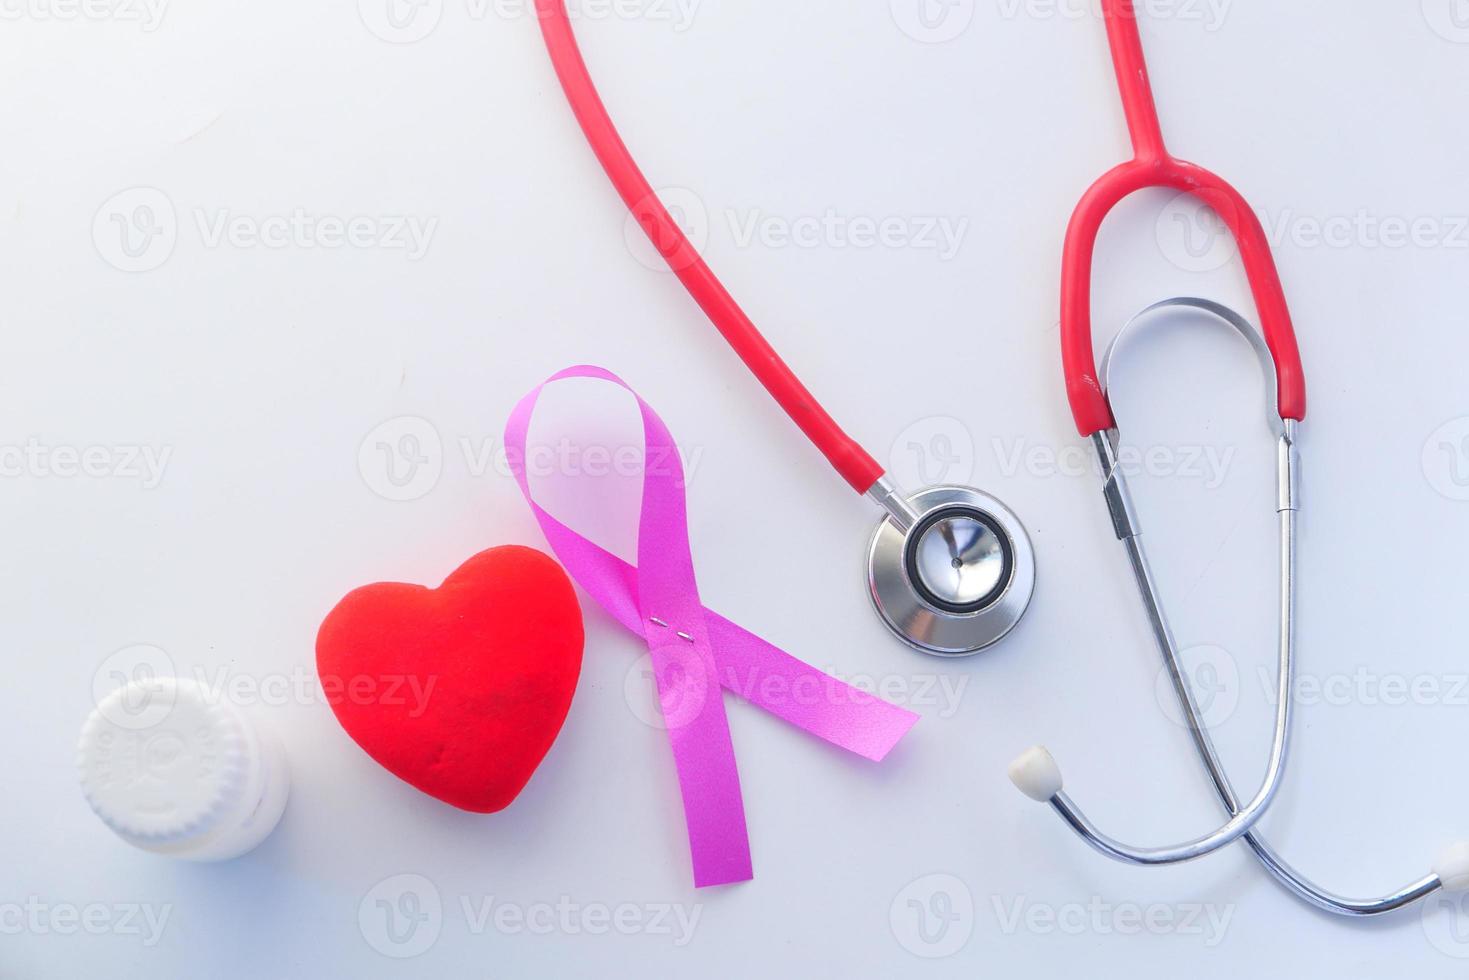 ruban rose, stéthoscope et coeur rouge sur fond blanc photo